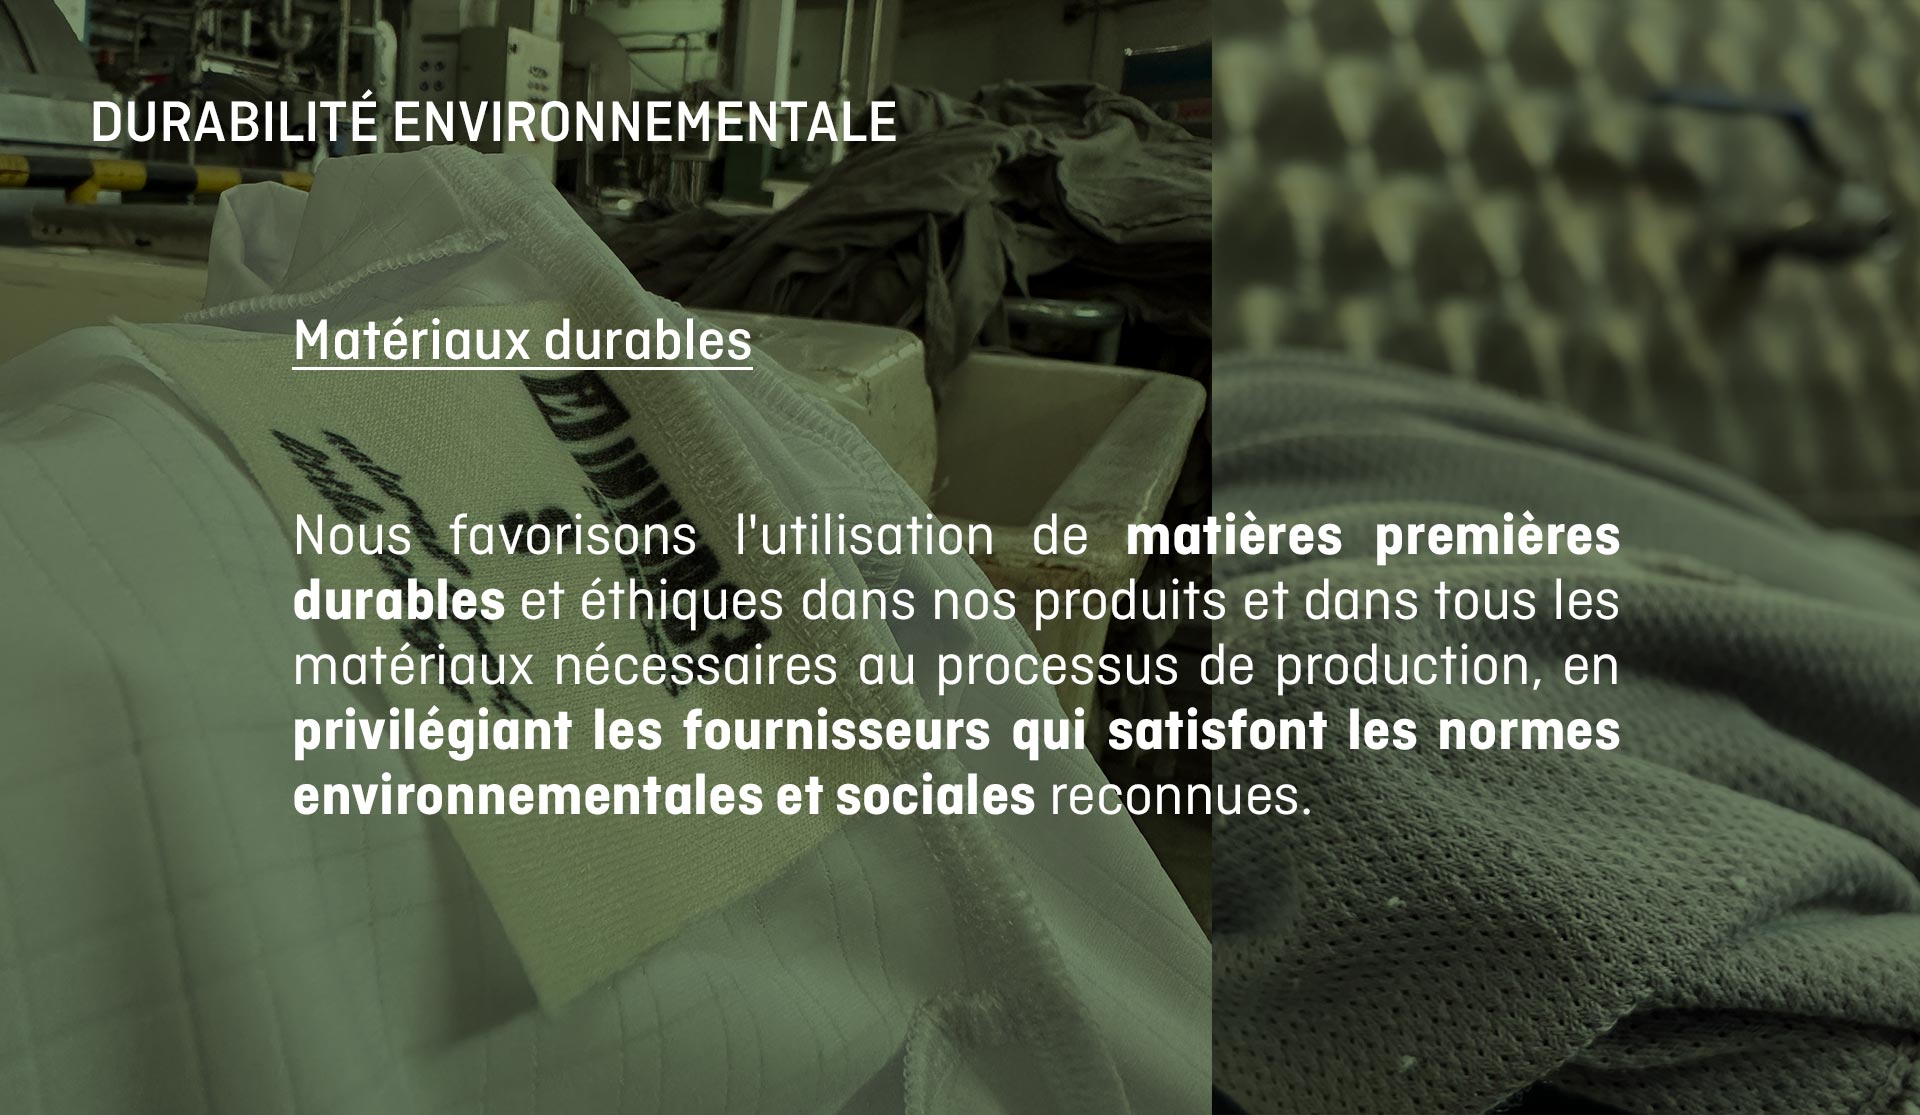 Nous favorisons l'utilisation de matières premières durables et éthiques dans nos produits et dans tous les matériaux nécessaires au processus de production